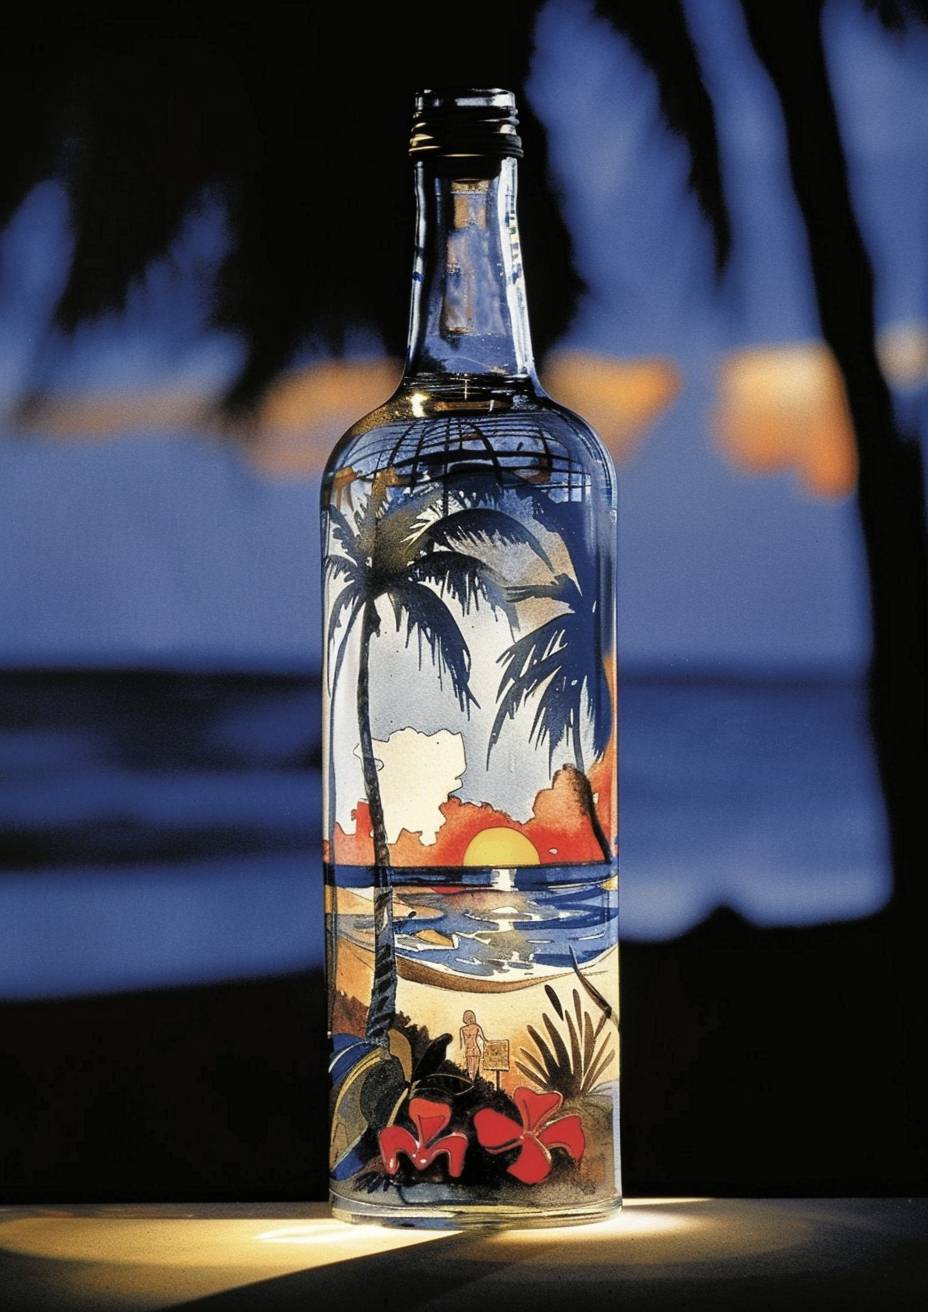 美しい水着モデルがいる熱帯ビーチを含むボトル、デジタル加工された画像のスタイル、輝く放射状の色彩、強い視覚的な流れ--ar 5:7 --sref 525600 --stylize 250 --v 6.0